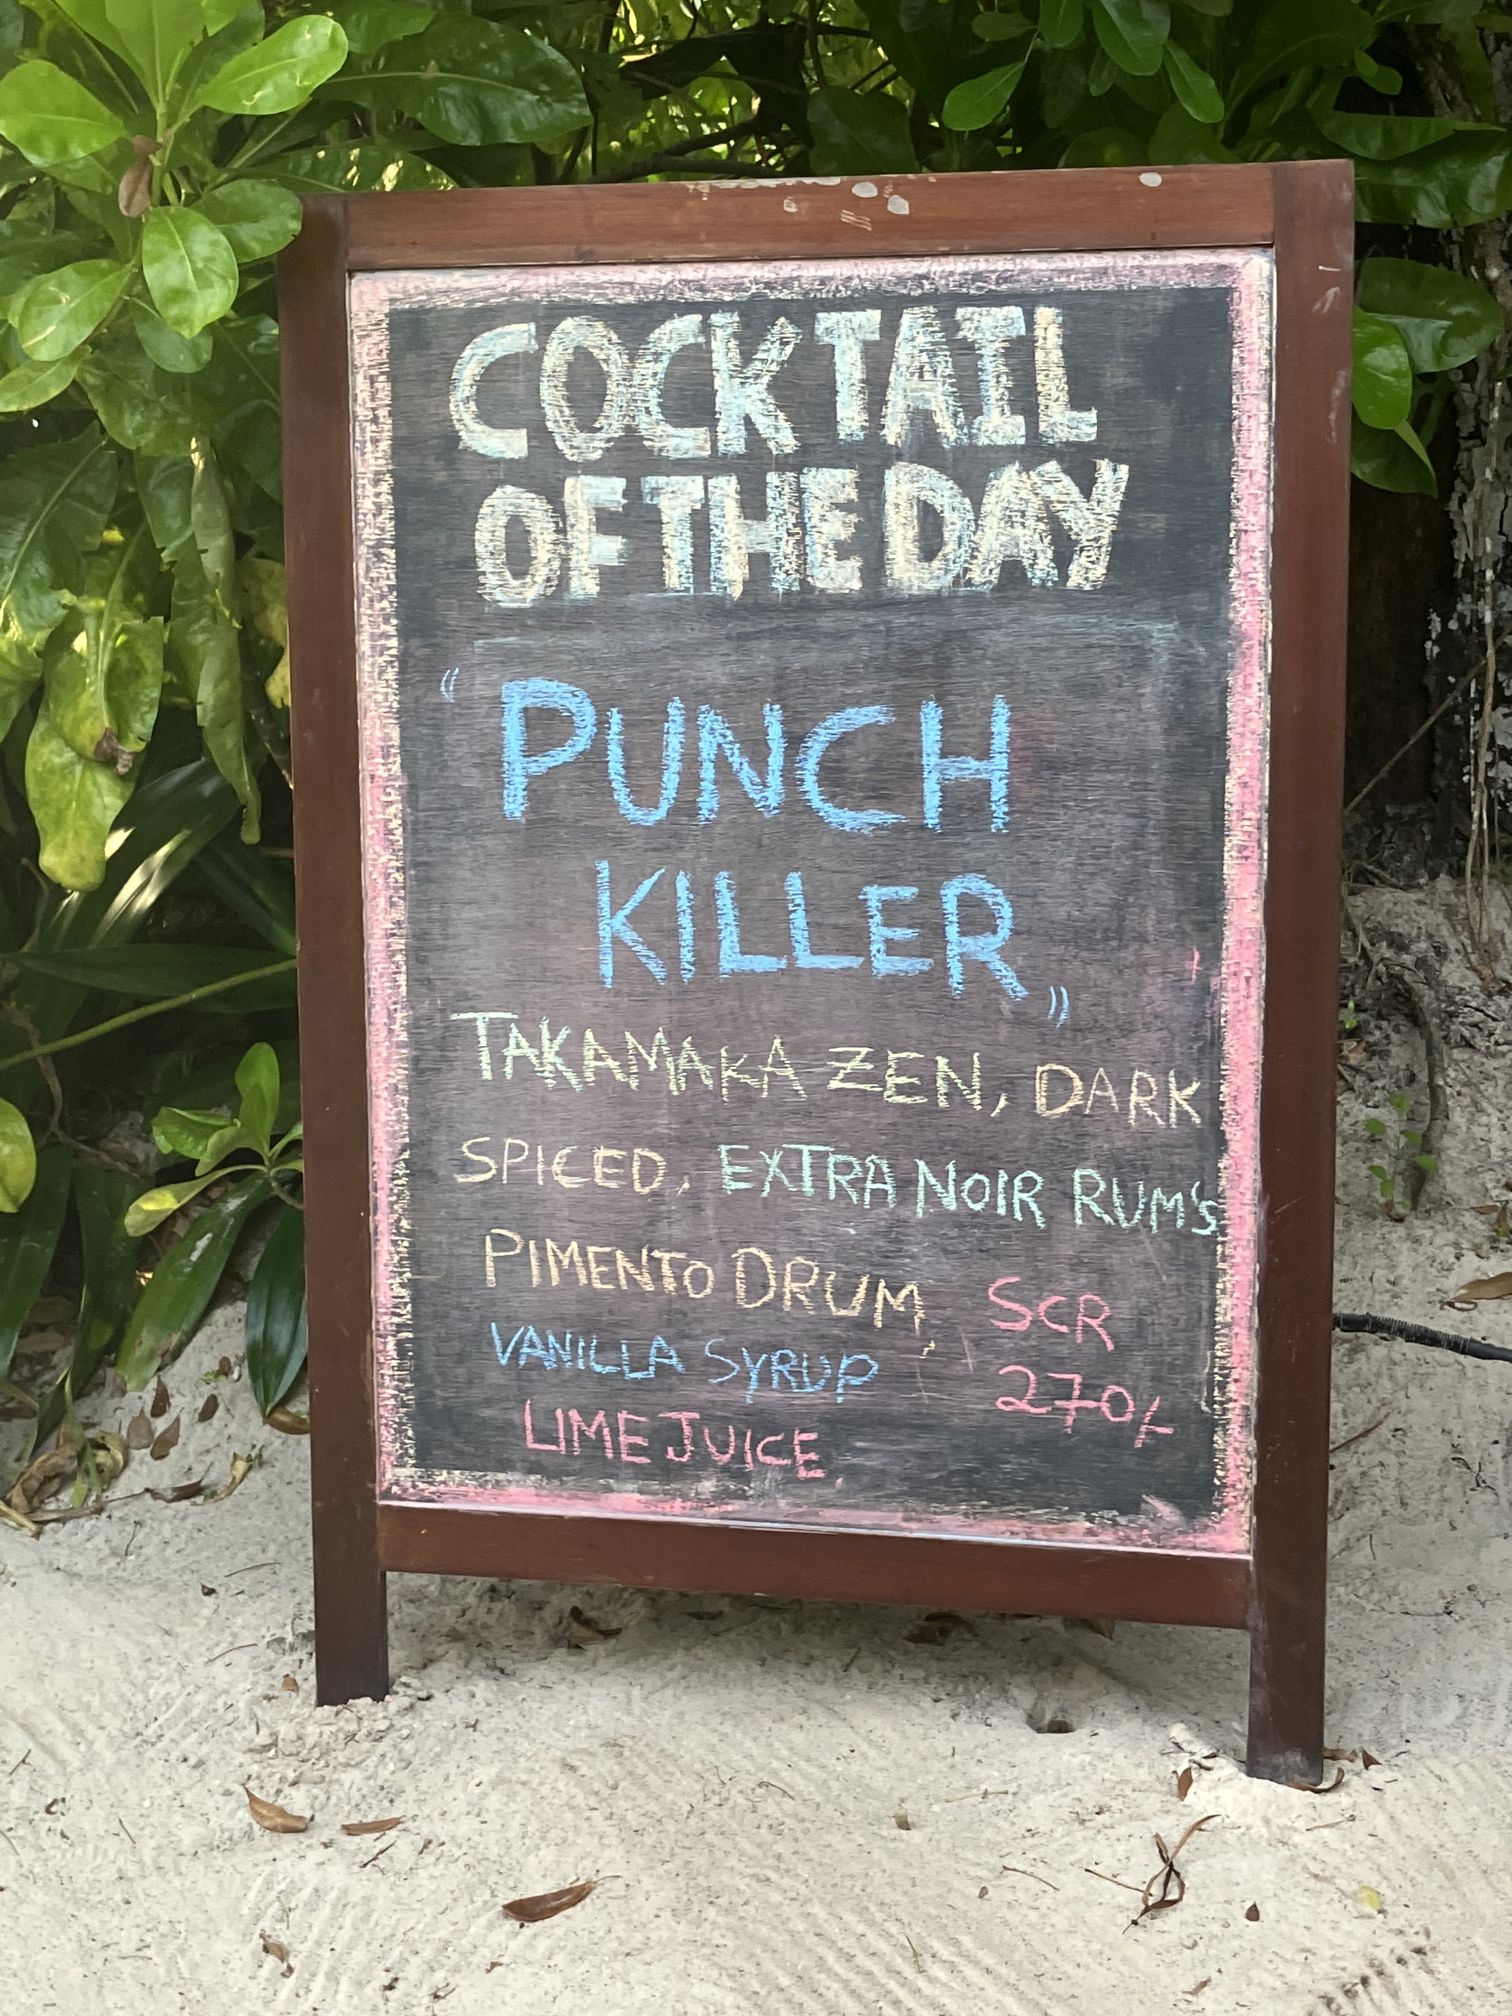 Tafel mit der Aufschreift Cocktail of the day: Punch Killer und den Inhalten des Getränks